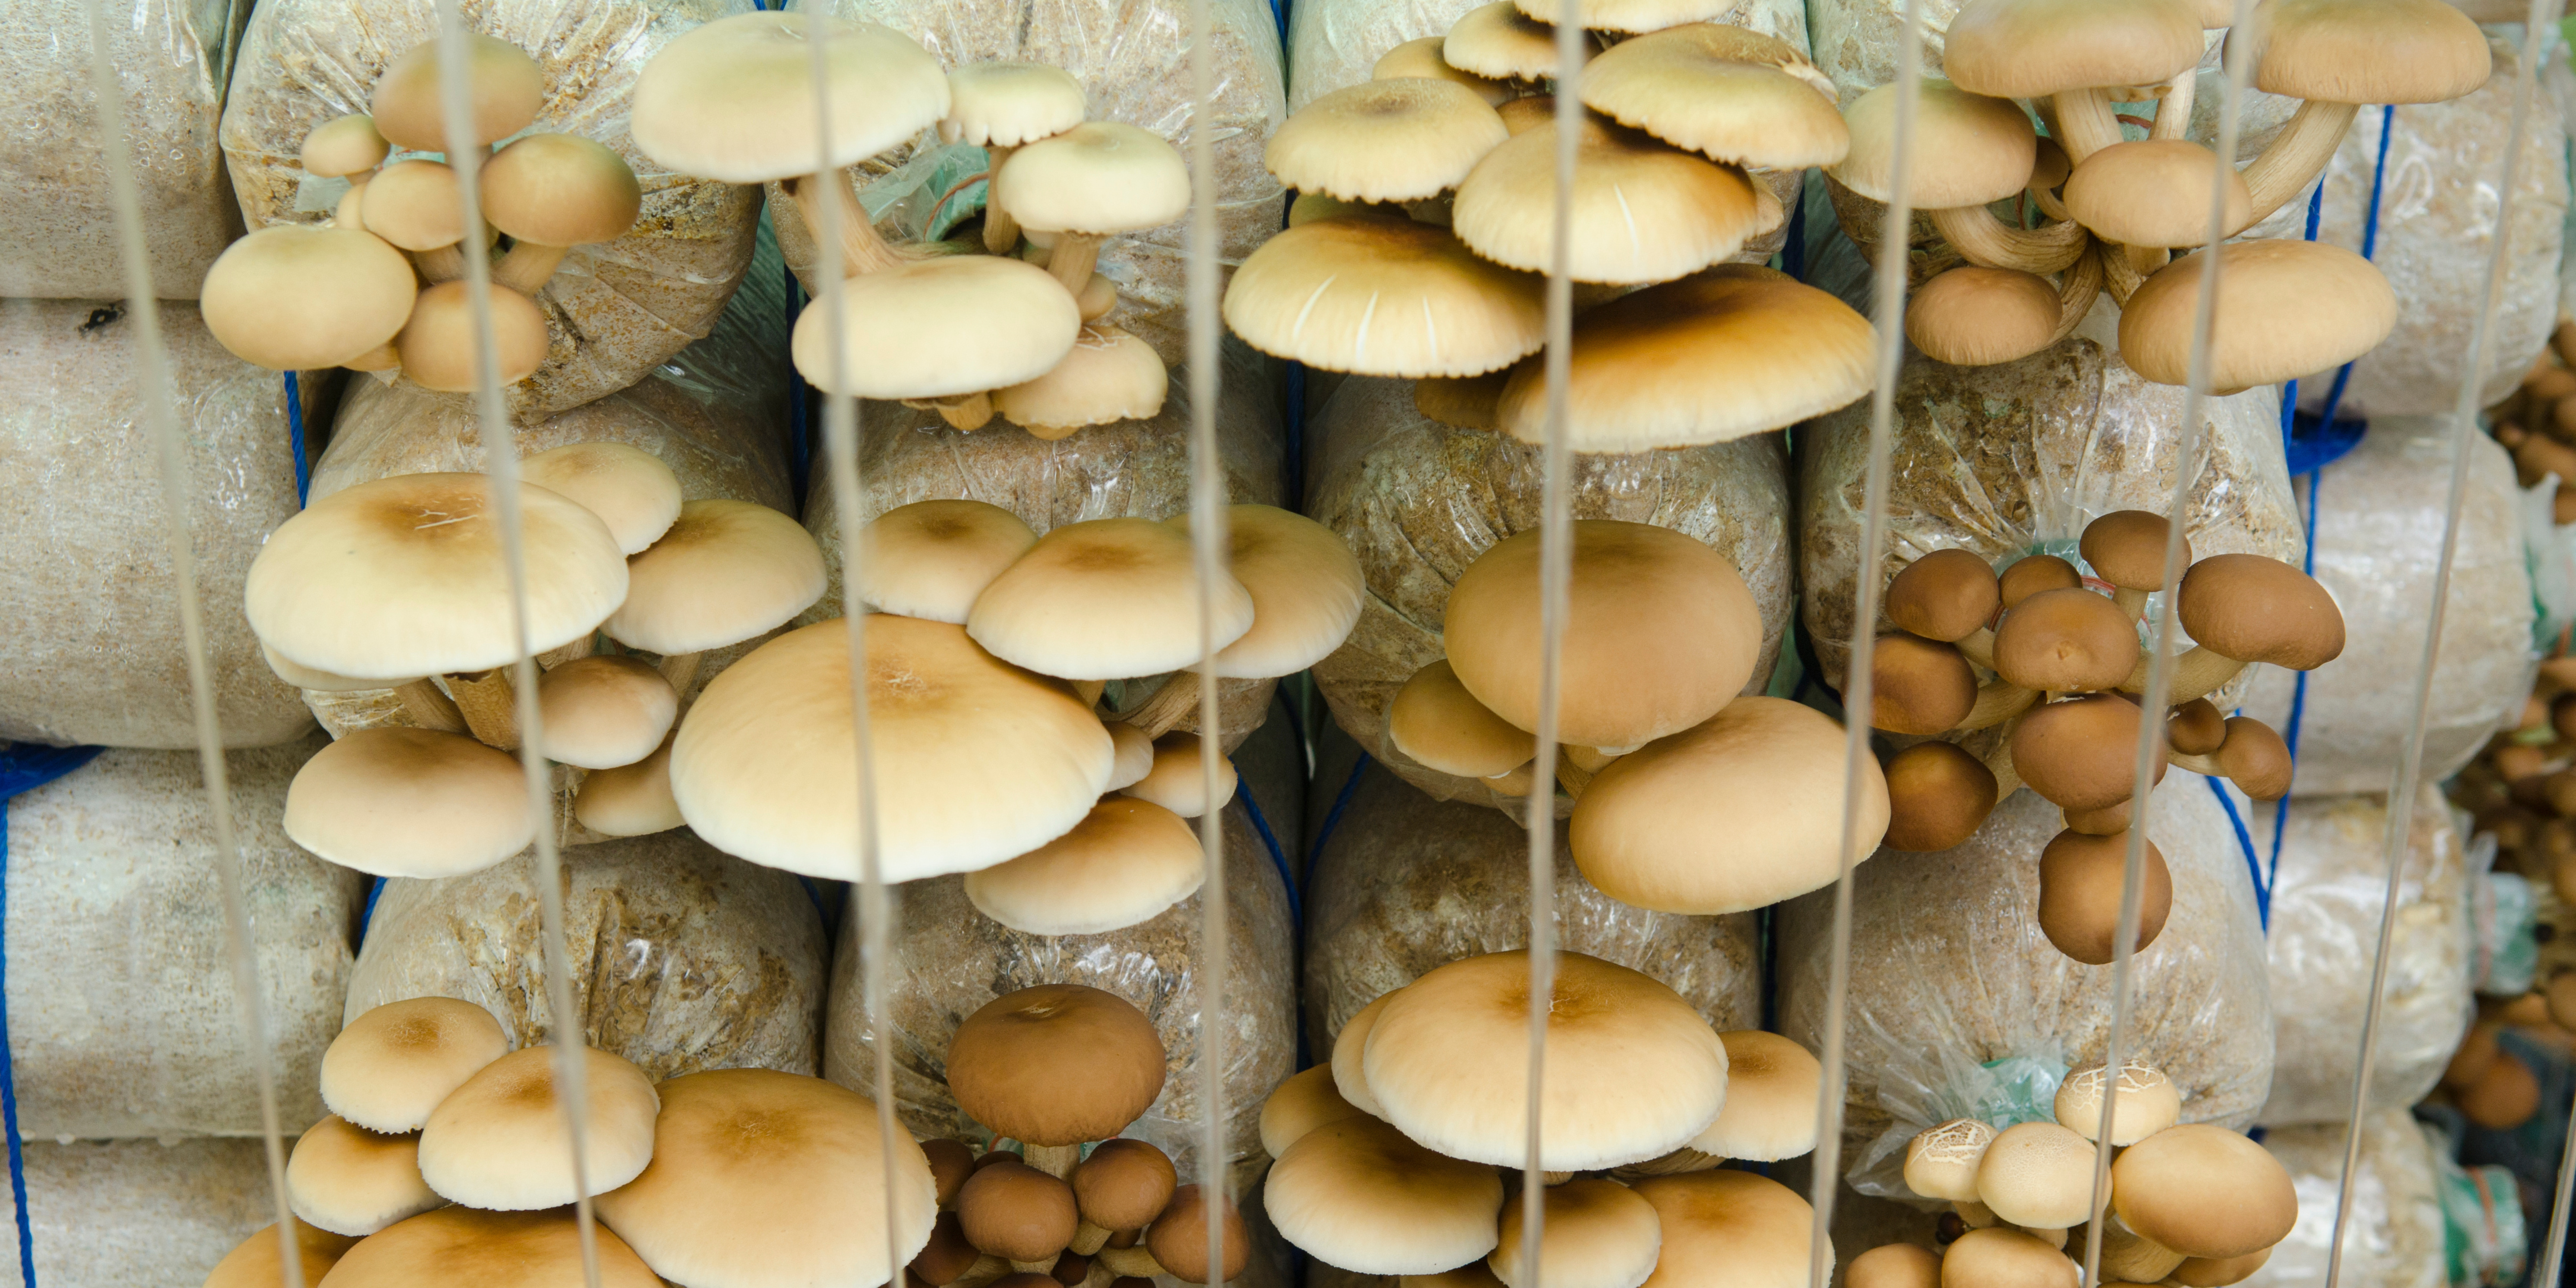 Mushroom Cultivation growing mushrooms indoors